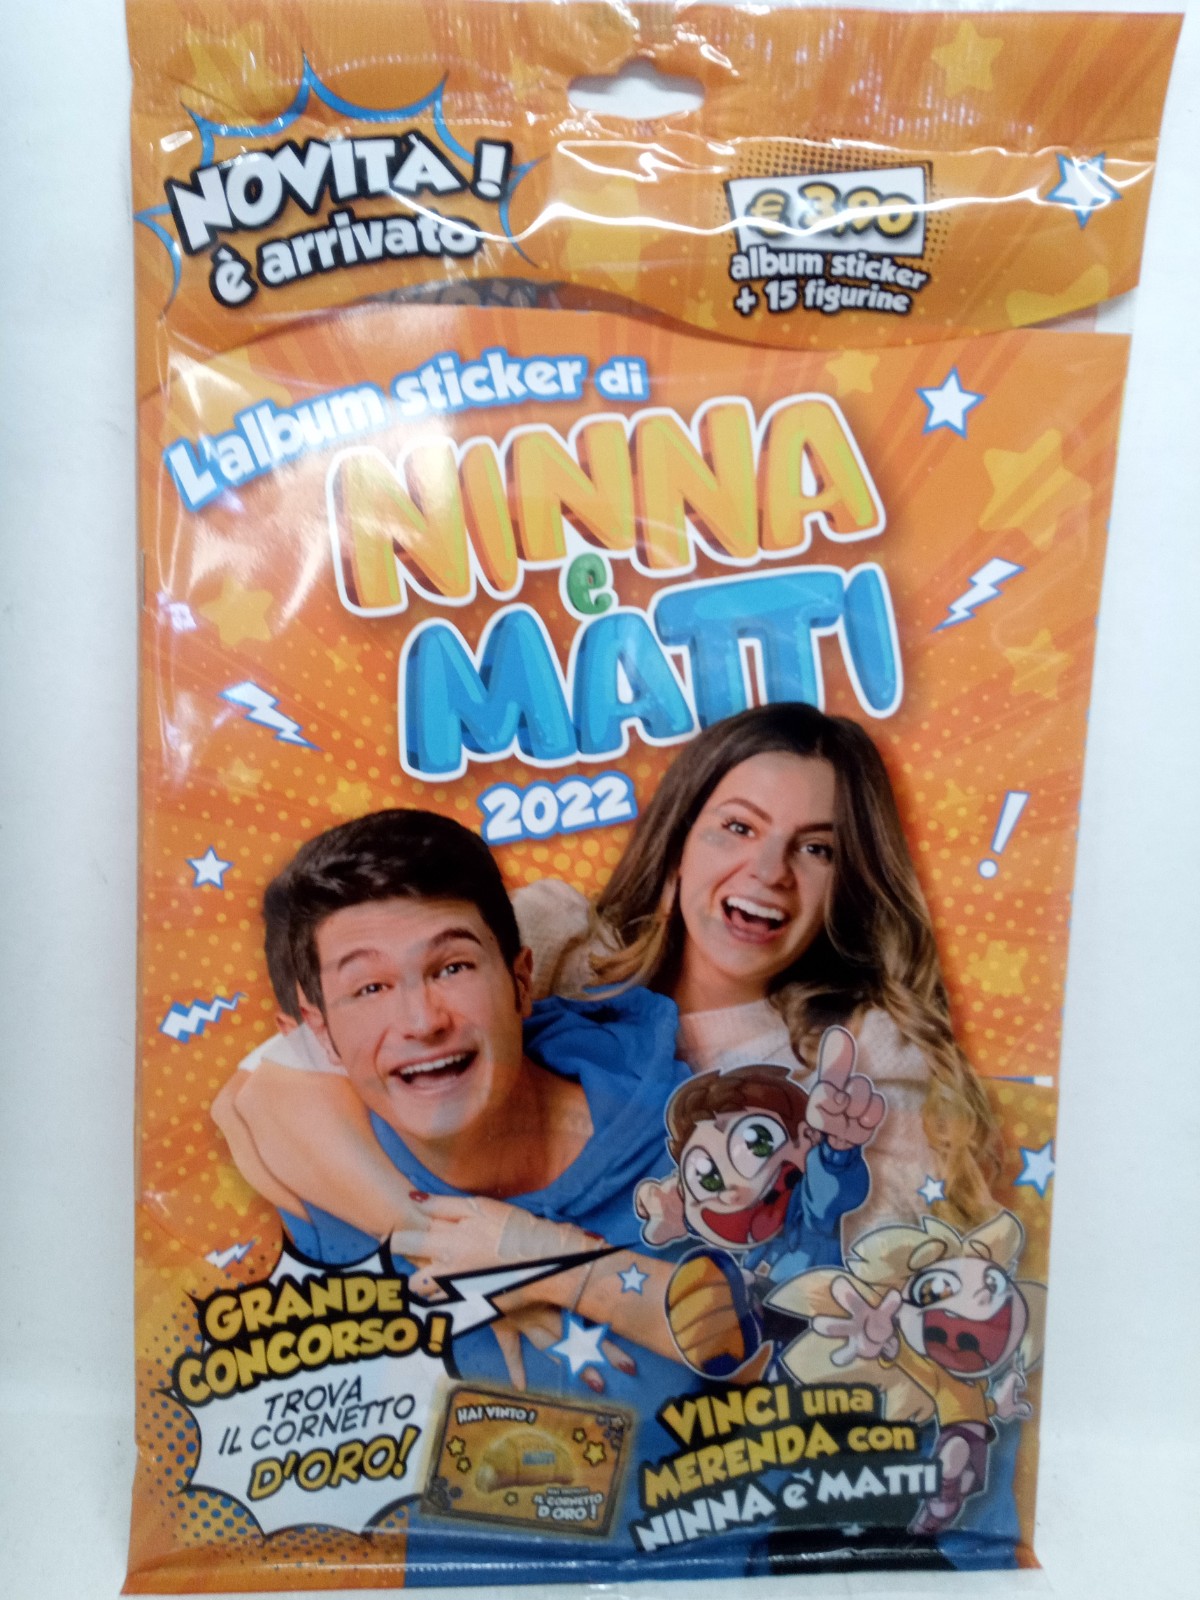 Edicola Marlene PD on X: Album sticker di Ninna e Matti , gli